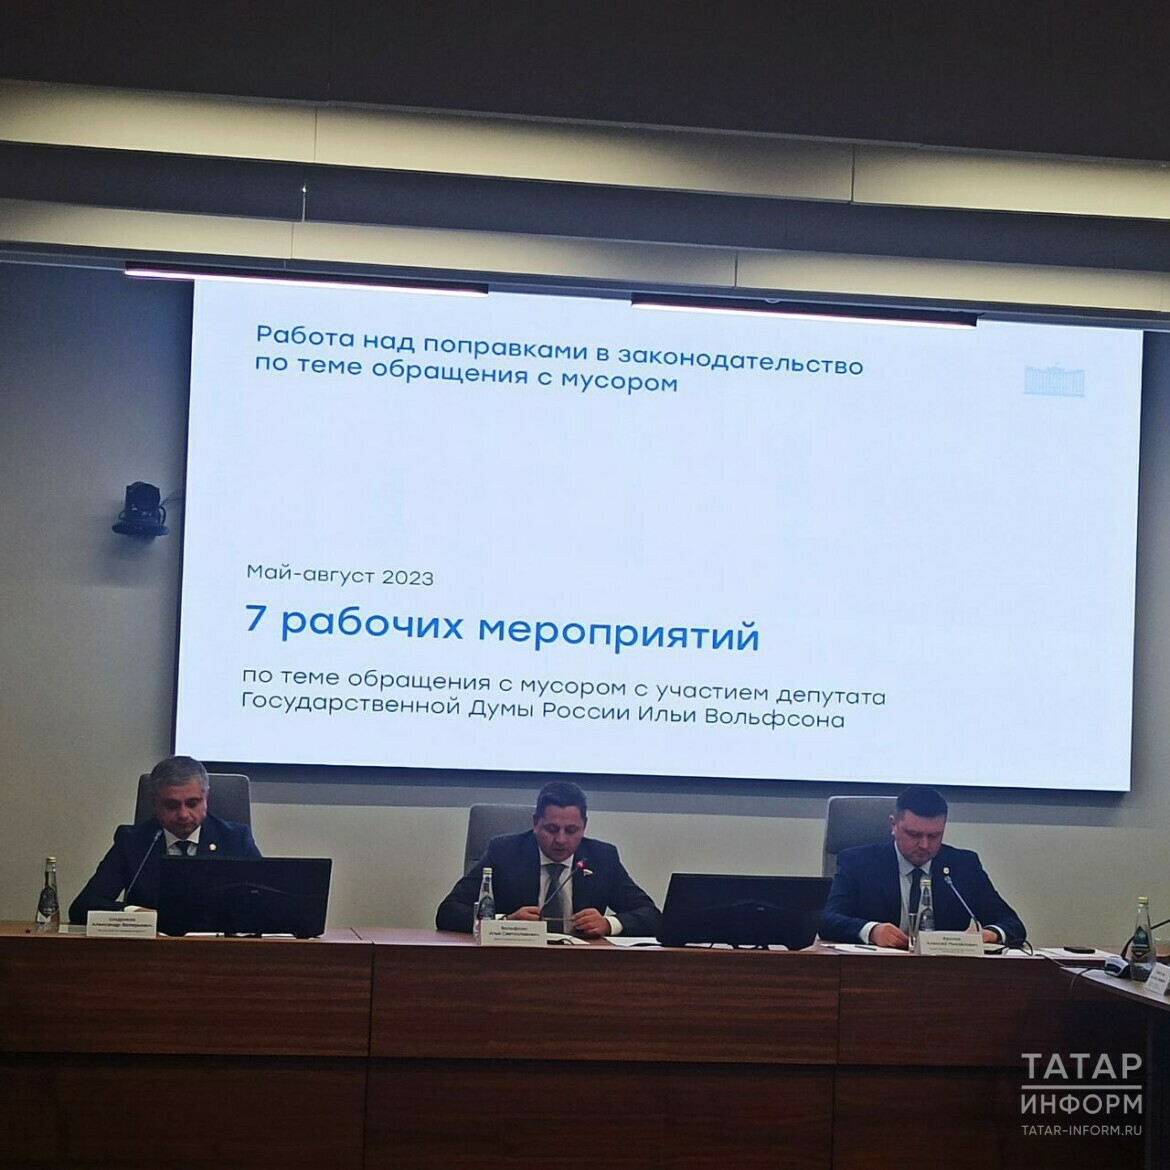 Татарстан сформировал топ-20 предложений для решения мусорной проблемы